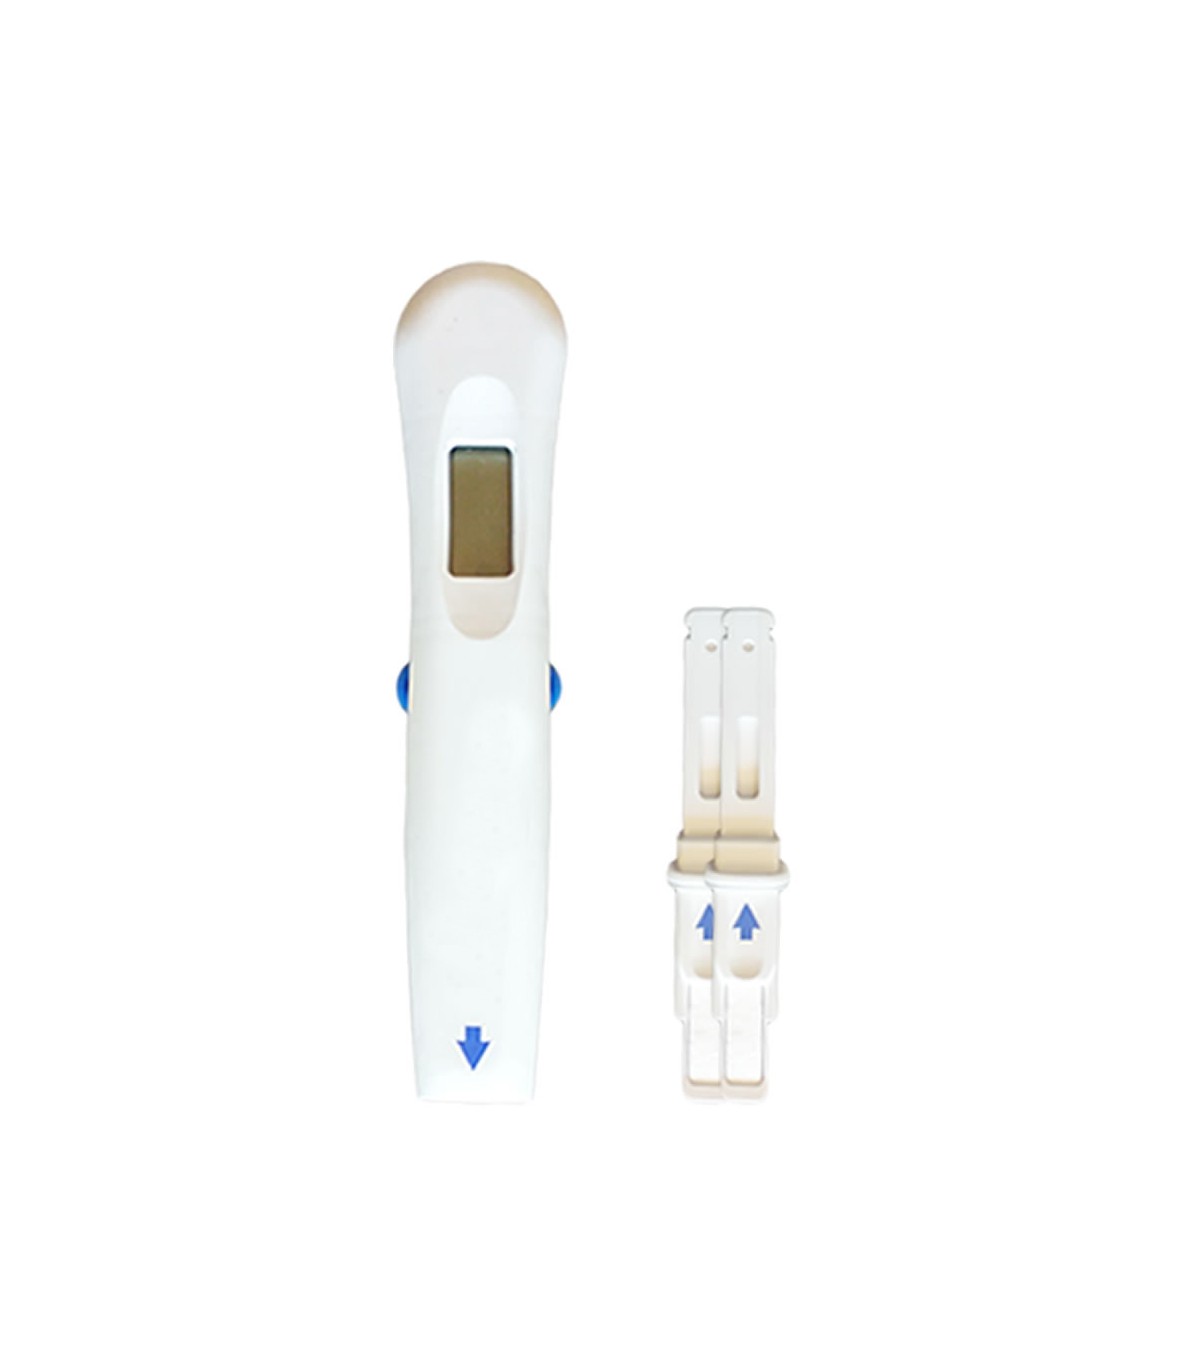 Tomhed afspejle cache 2 digital pregnancy tests - HomeTest.gr